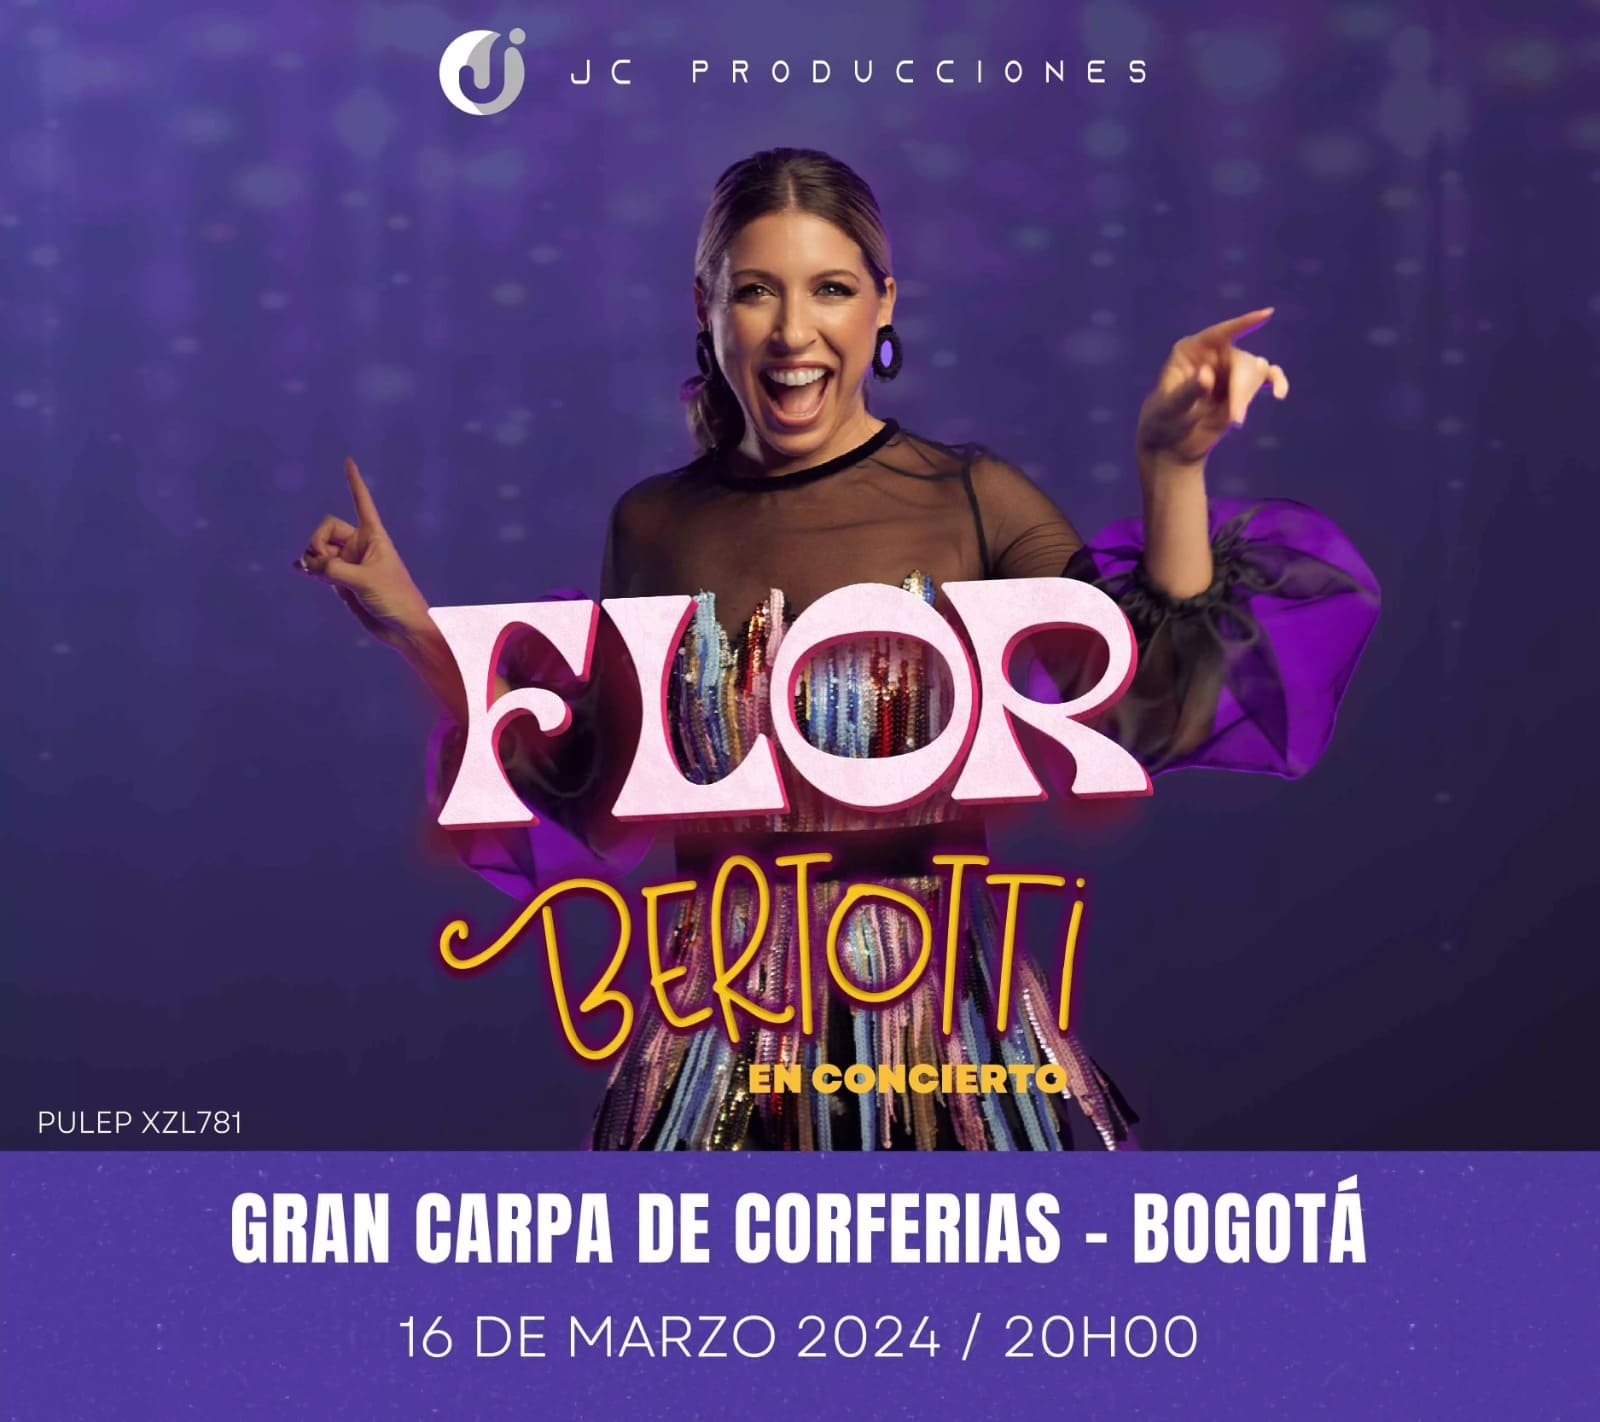 Única función de Flor Bertotti en Bogotá